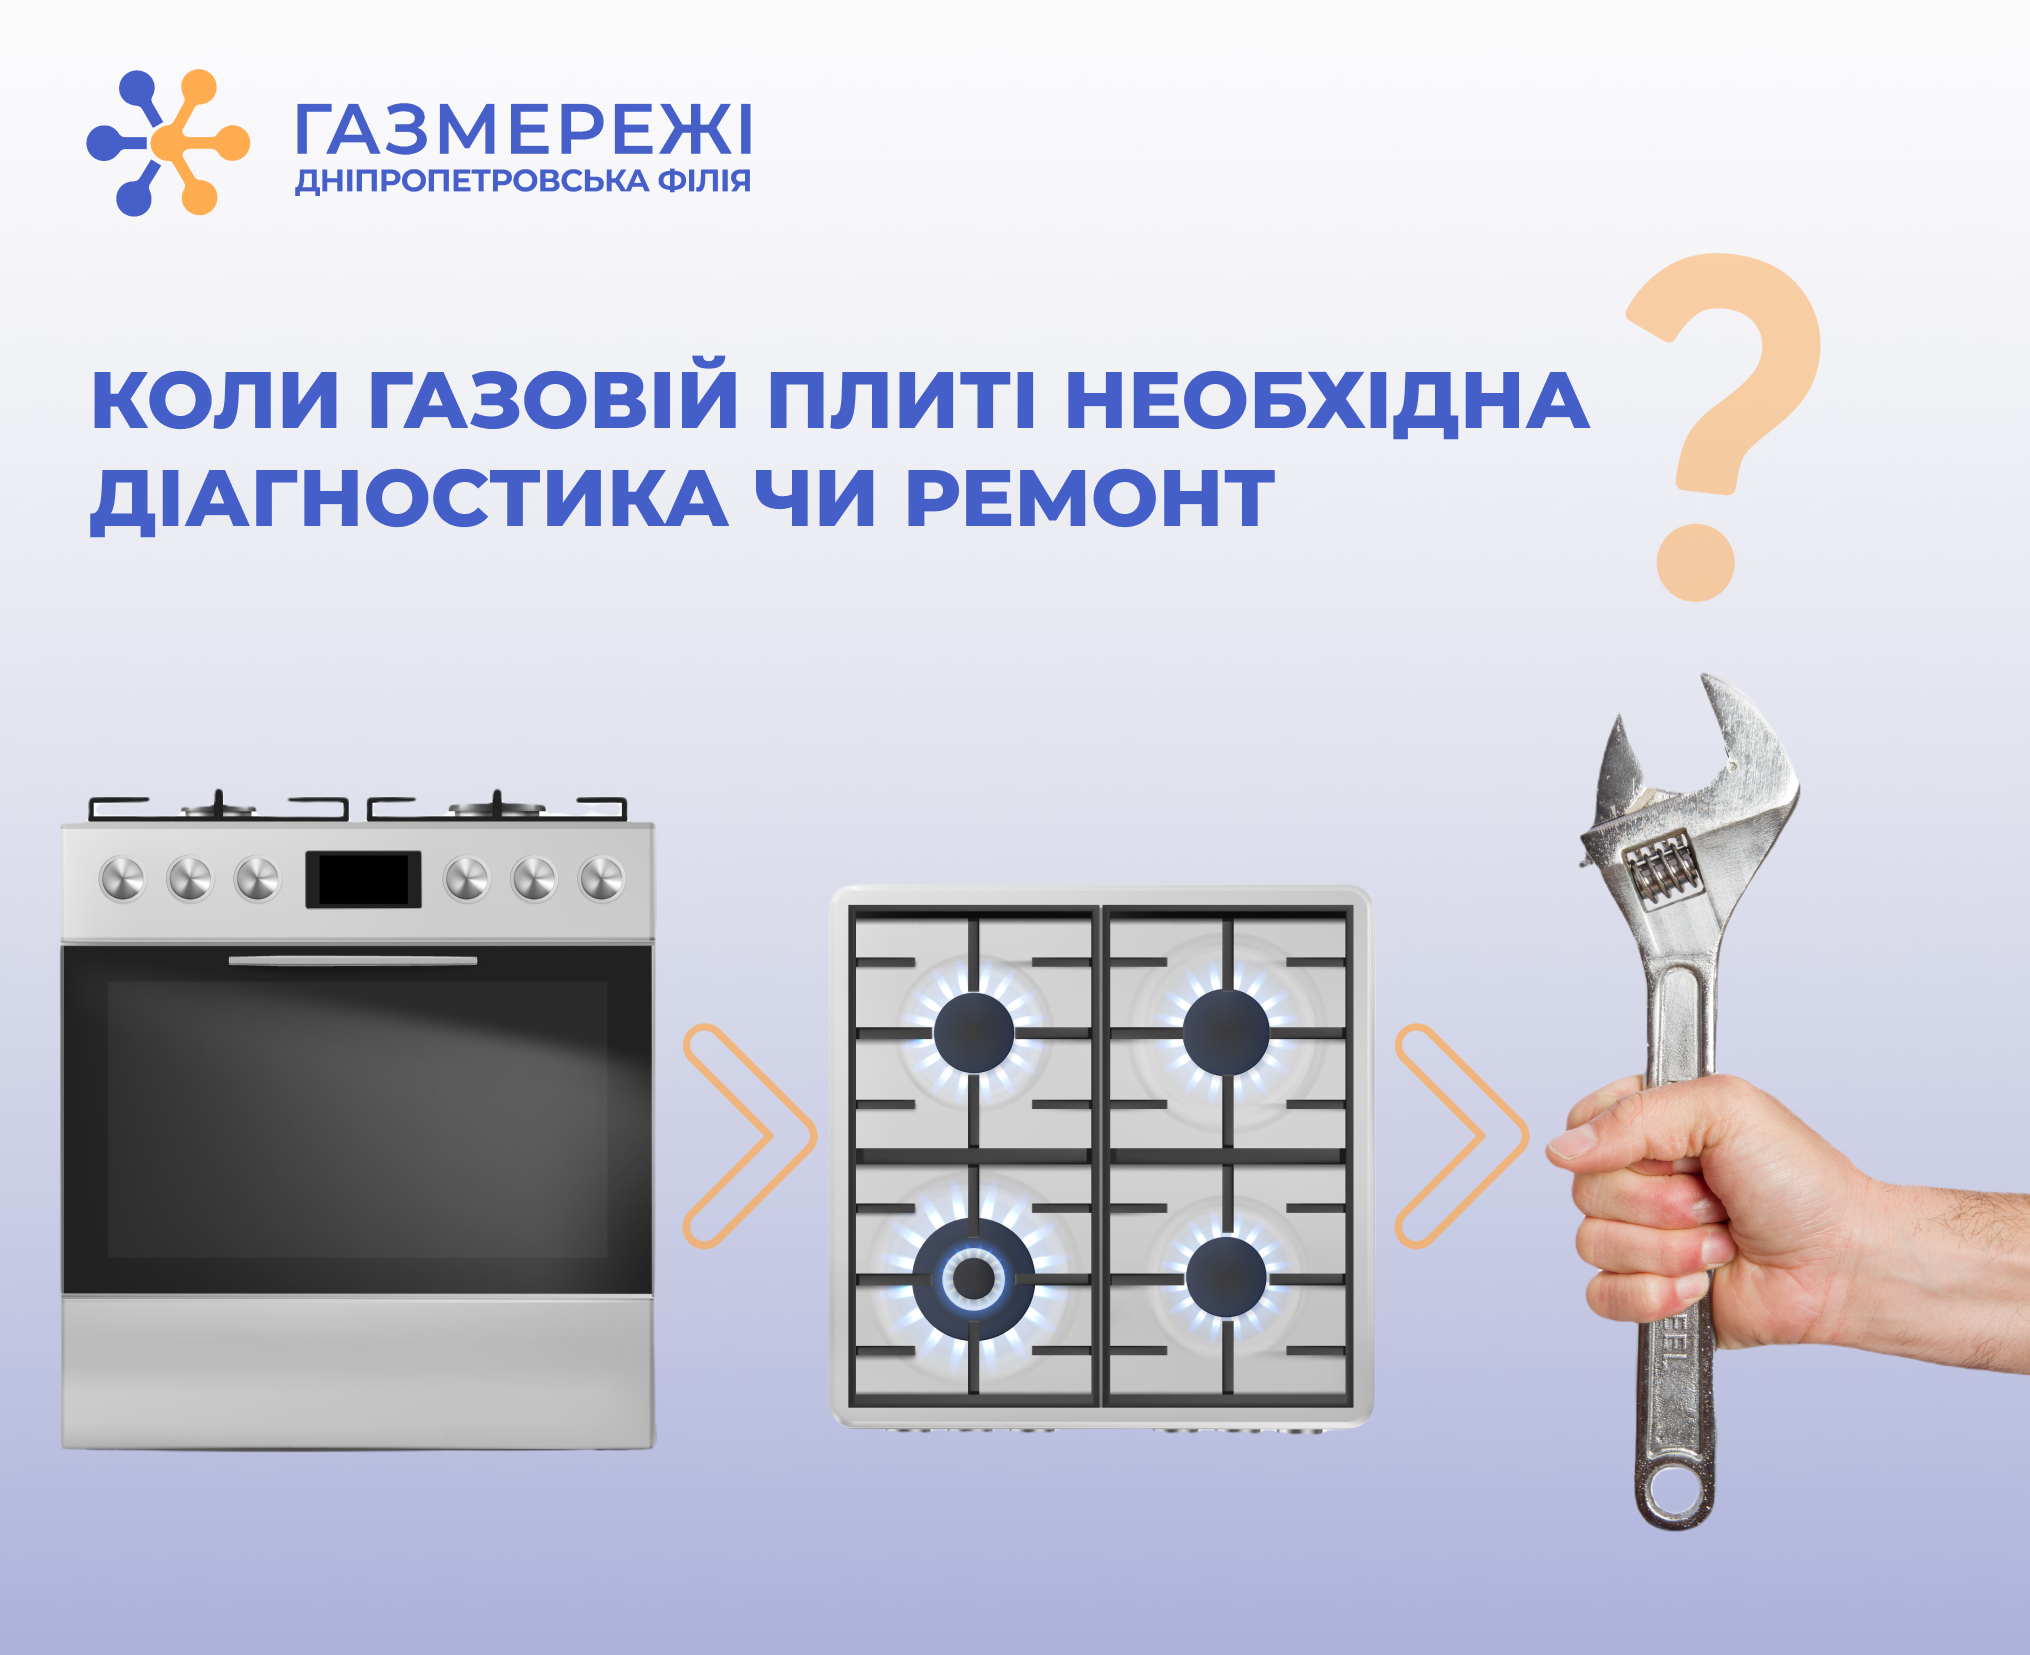 Дніпропетровська філія «Газмережі» нагадує, коли газовій плиті необхідна діагностика чи ремонт